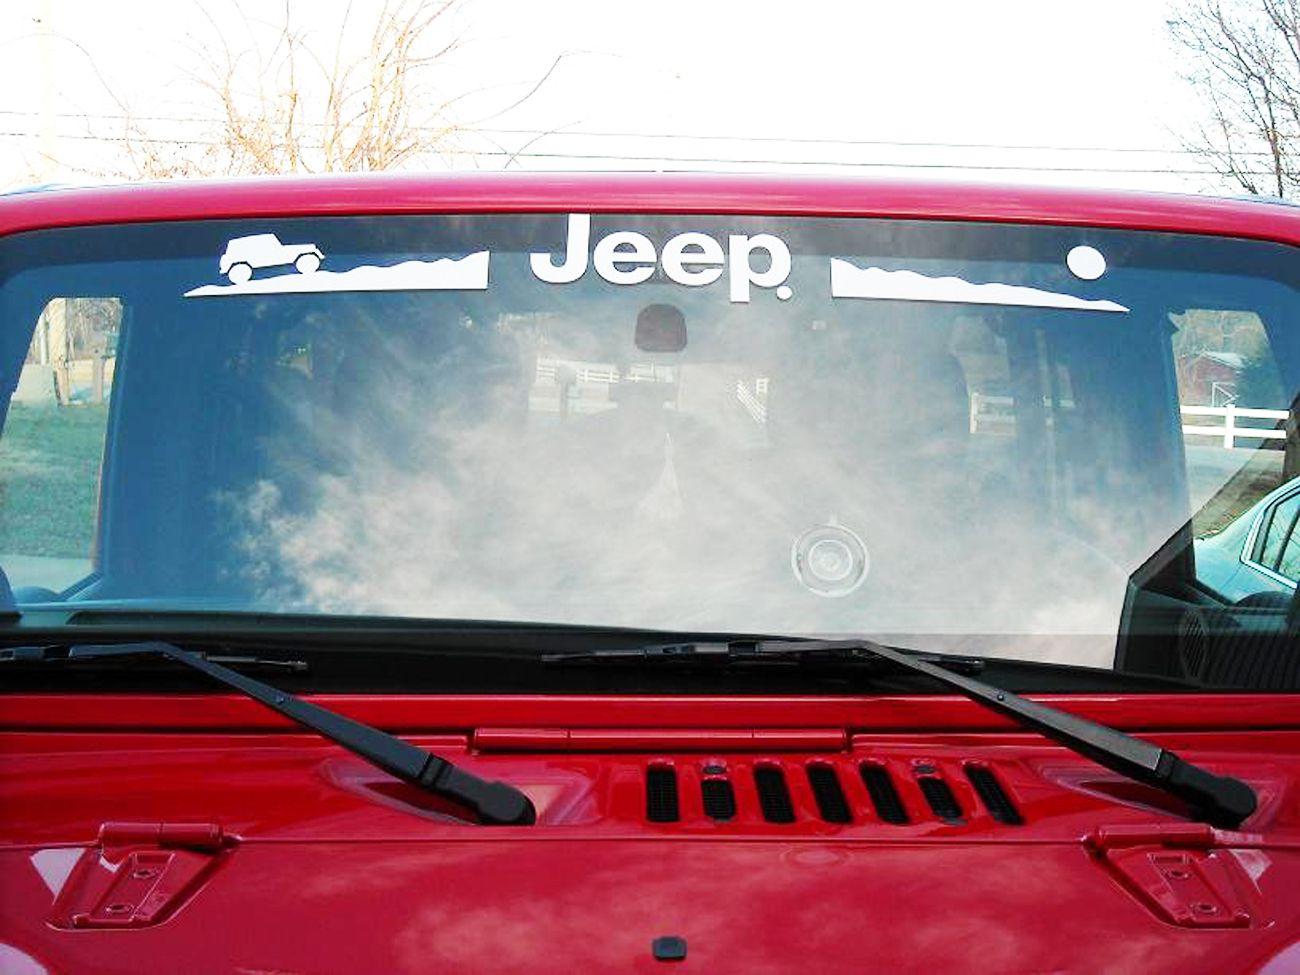 Jeep Wrangler Windshield Logo - Product: Jeep Mountain Rubicon CJ XJ YJ TJ Windshield Decal